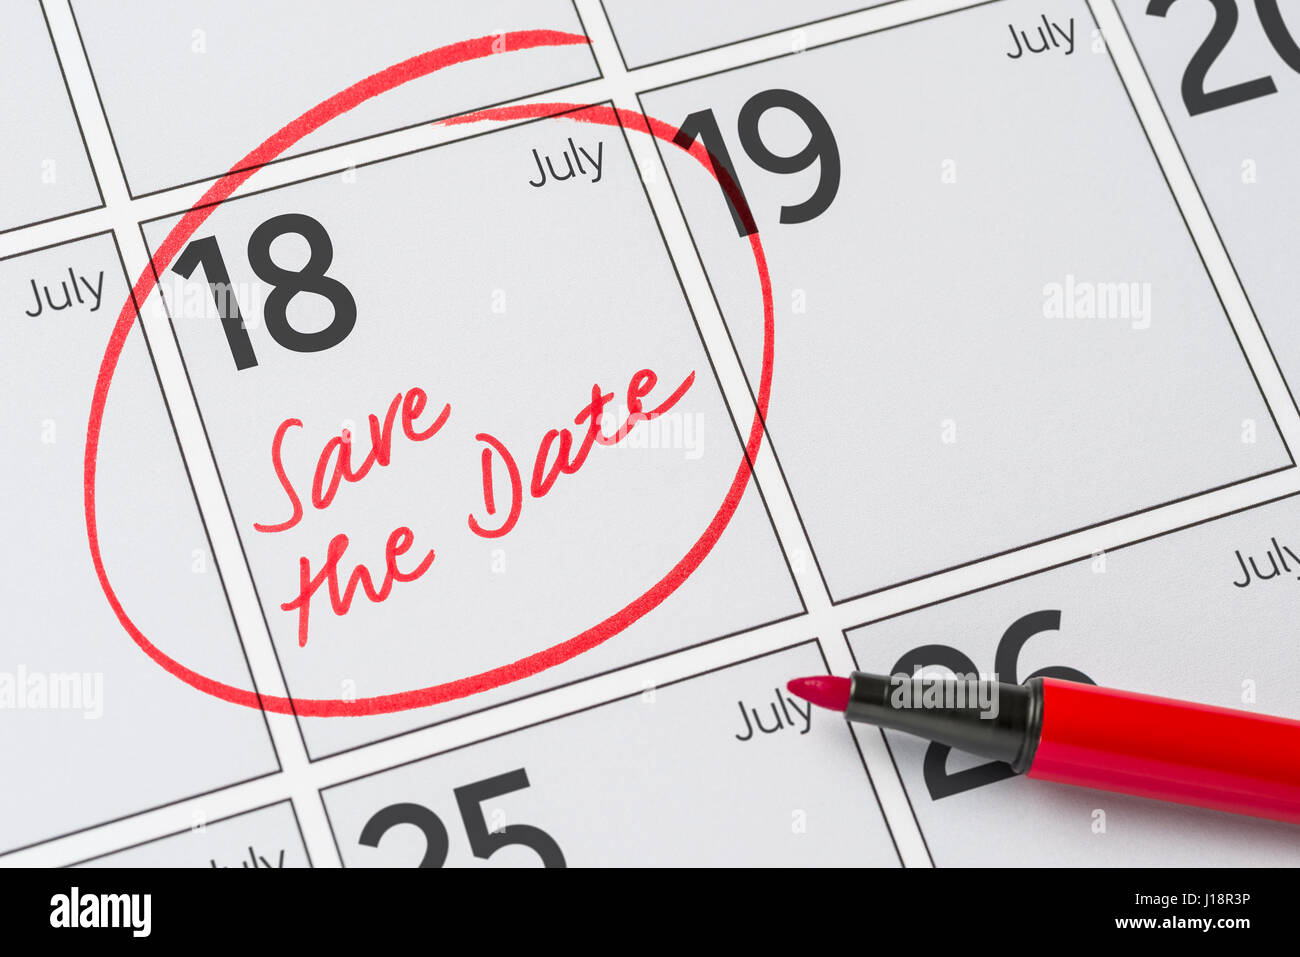 Enregistrer la date inscrite sur un calendrier - Juillet 18 Banque D'Images